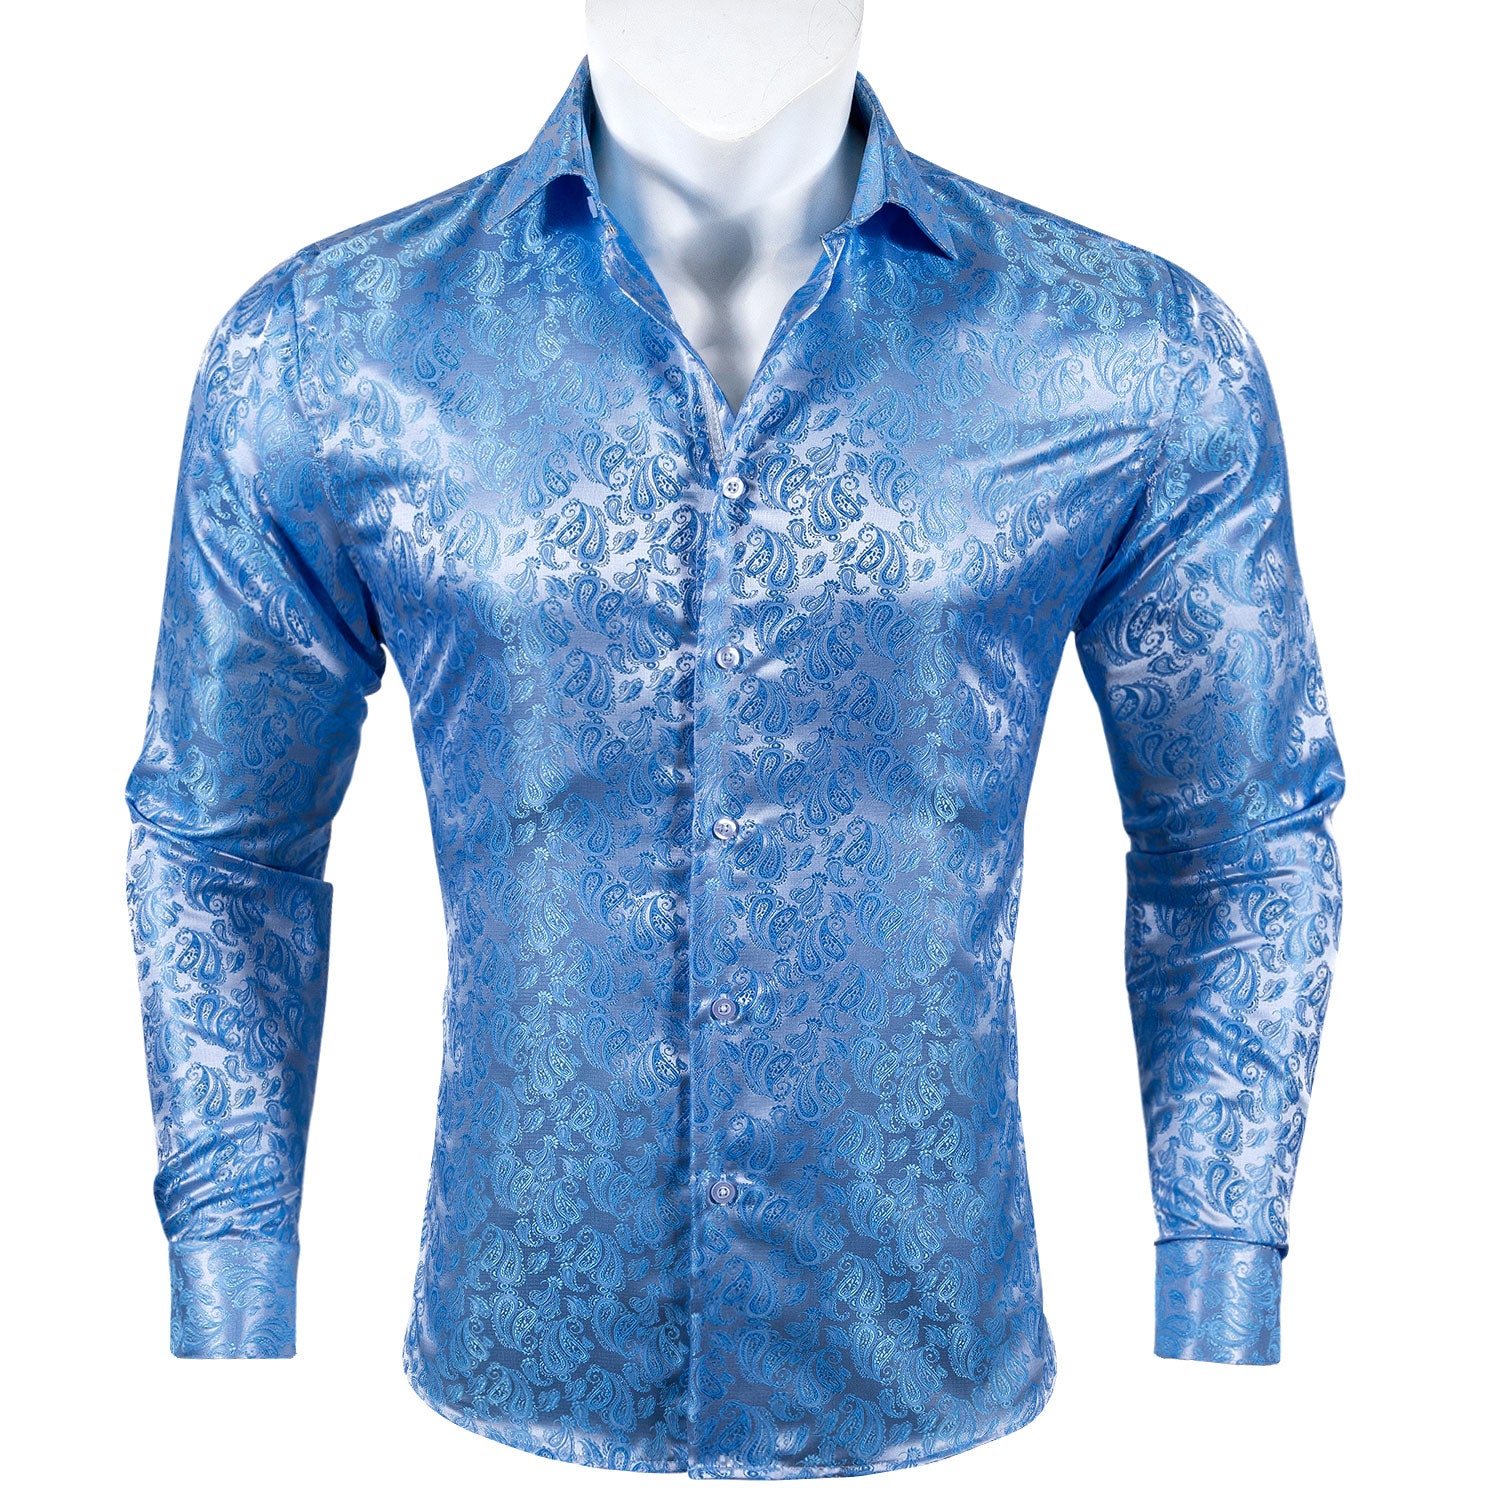 silver Light sky blue shirt dress shirt casual 